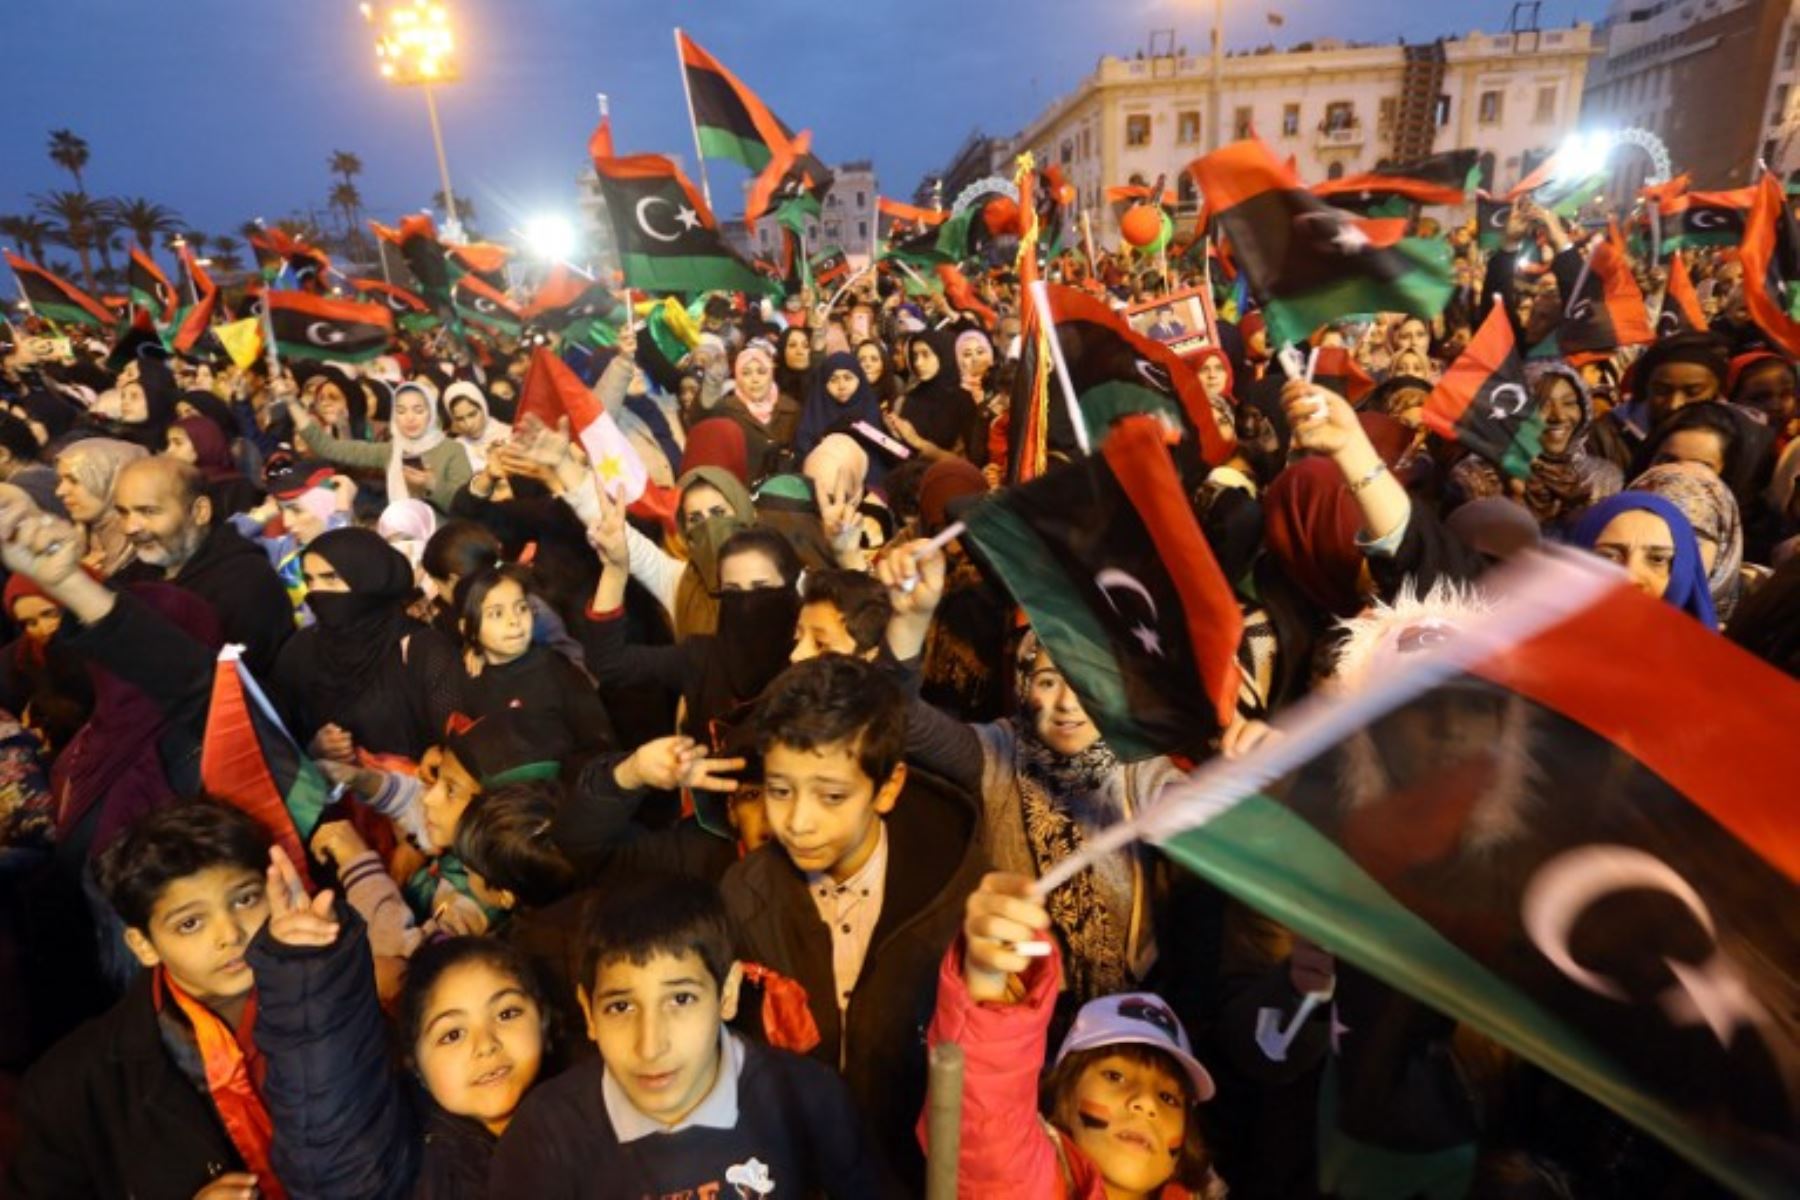 Los libios ondean banderas nacionales mientras asisten a una celebración que marca el séptimo aniversario de la revolución libia que derrocó al difunto líder Moamer Kadhafi, en la Plaza de los Mártires de la capital.Foto:AFP